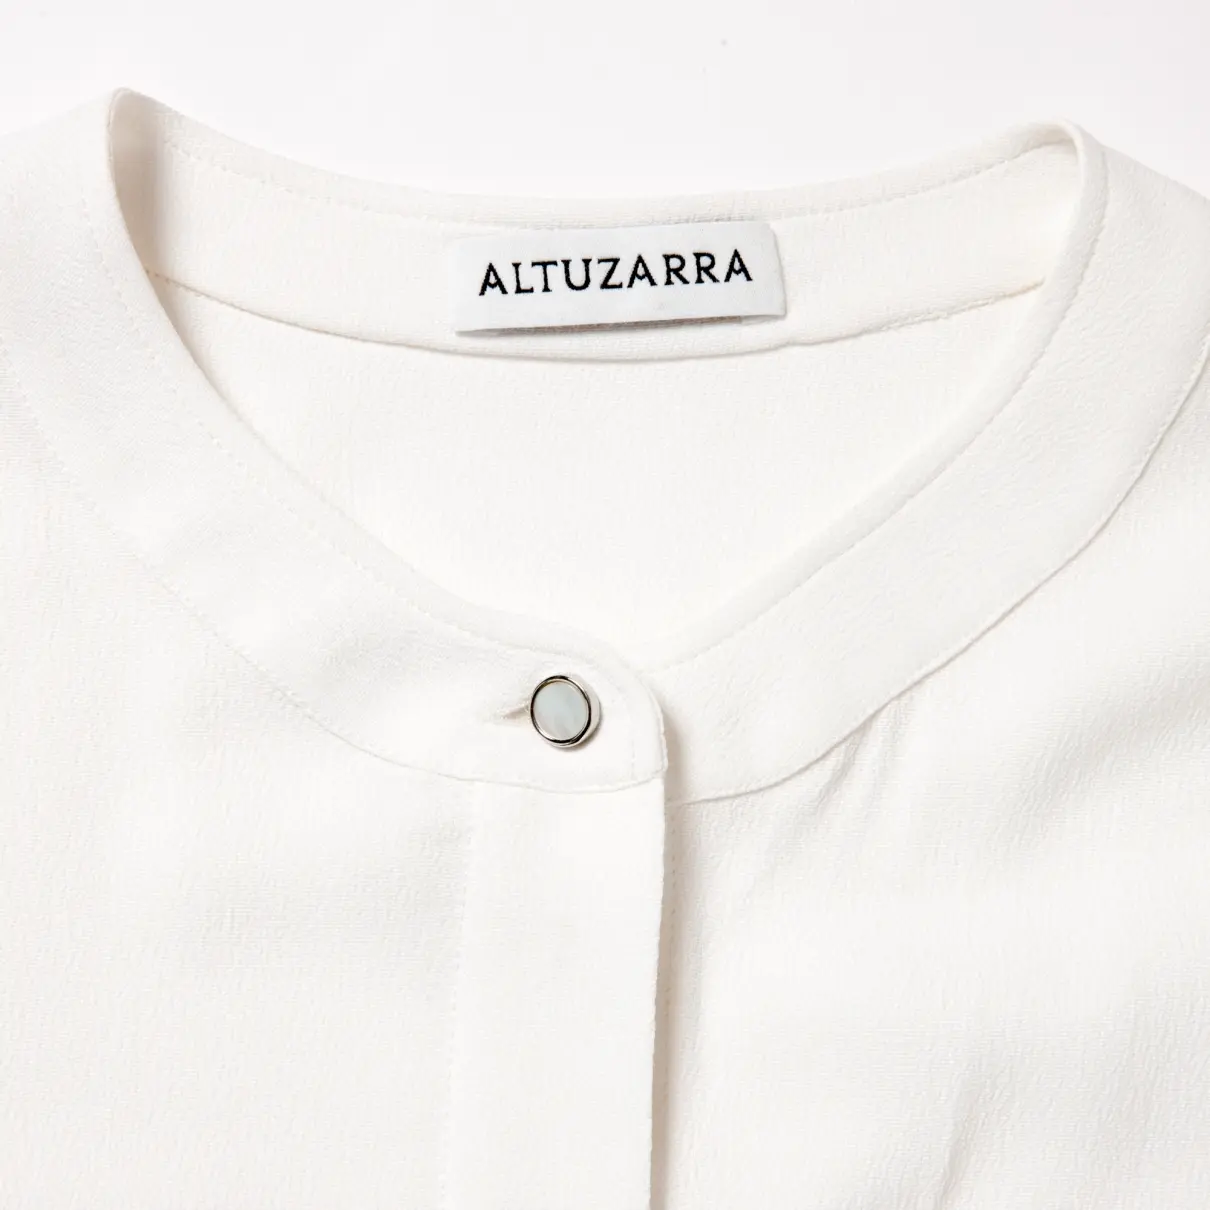 Buy Altuzarra Silk shirt online